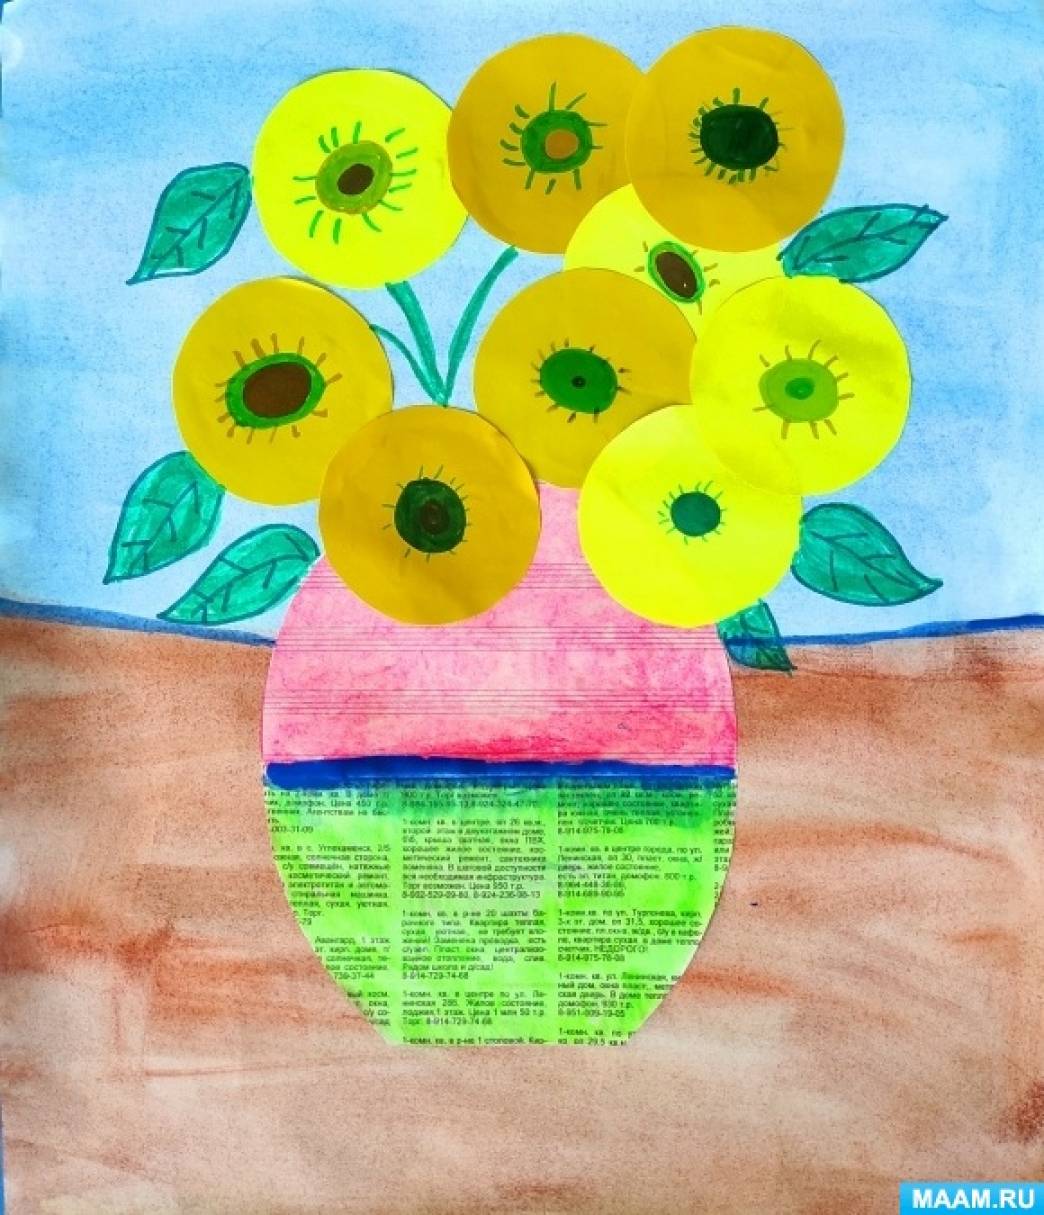 MAAM.ru: Объемная аппликация из цветной бумаги «Цветы в вазе»